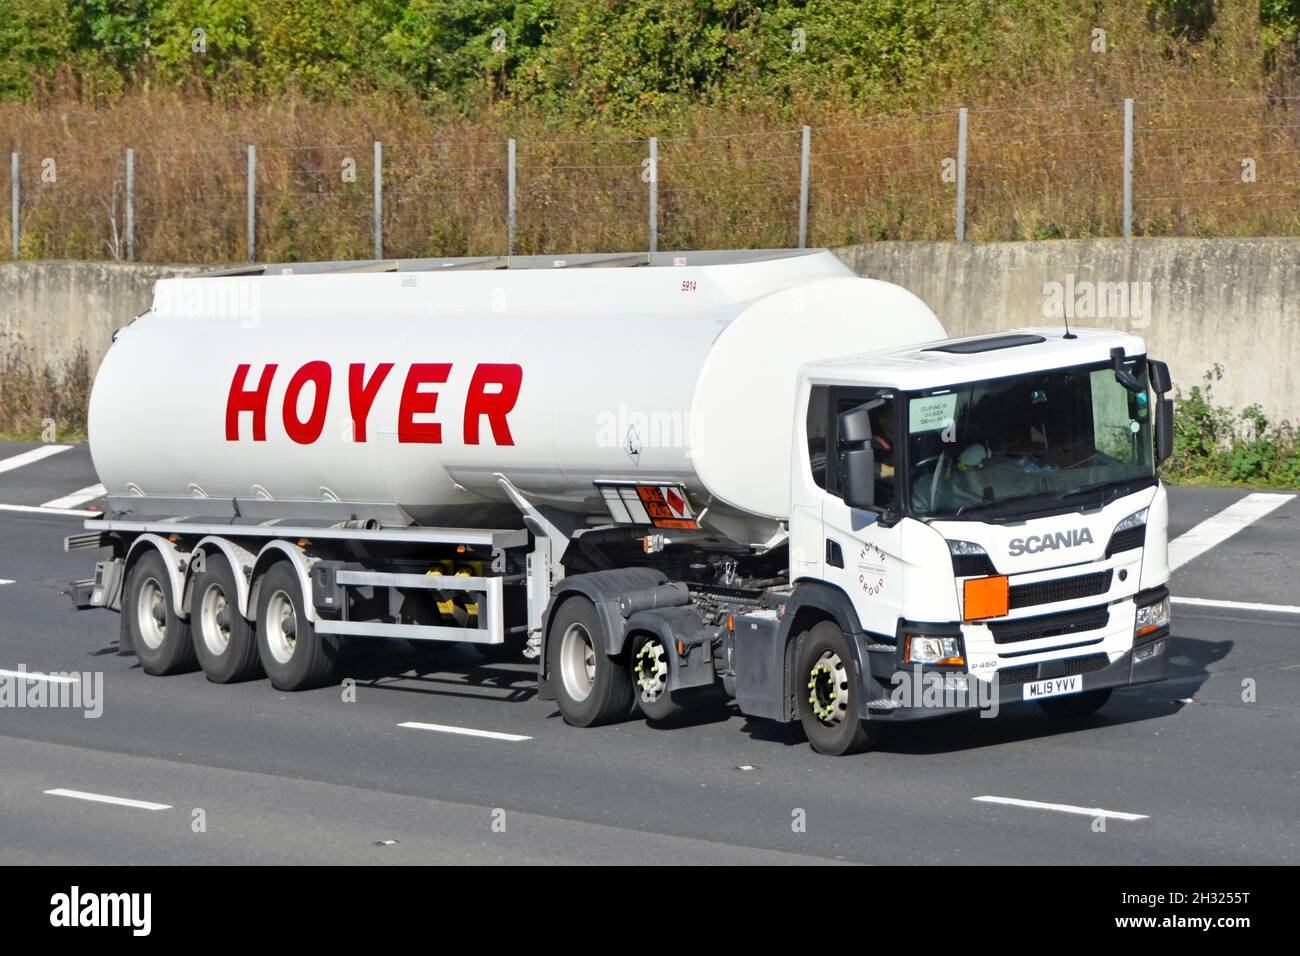 Hoyer-LKW auf Autobahn redaktionelles bild. Bild von schlepper